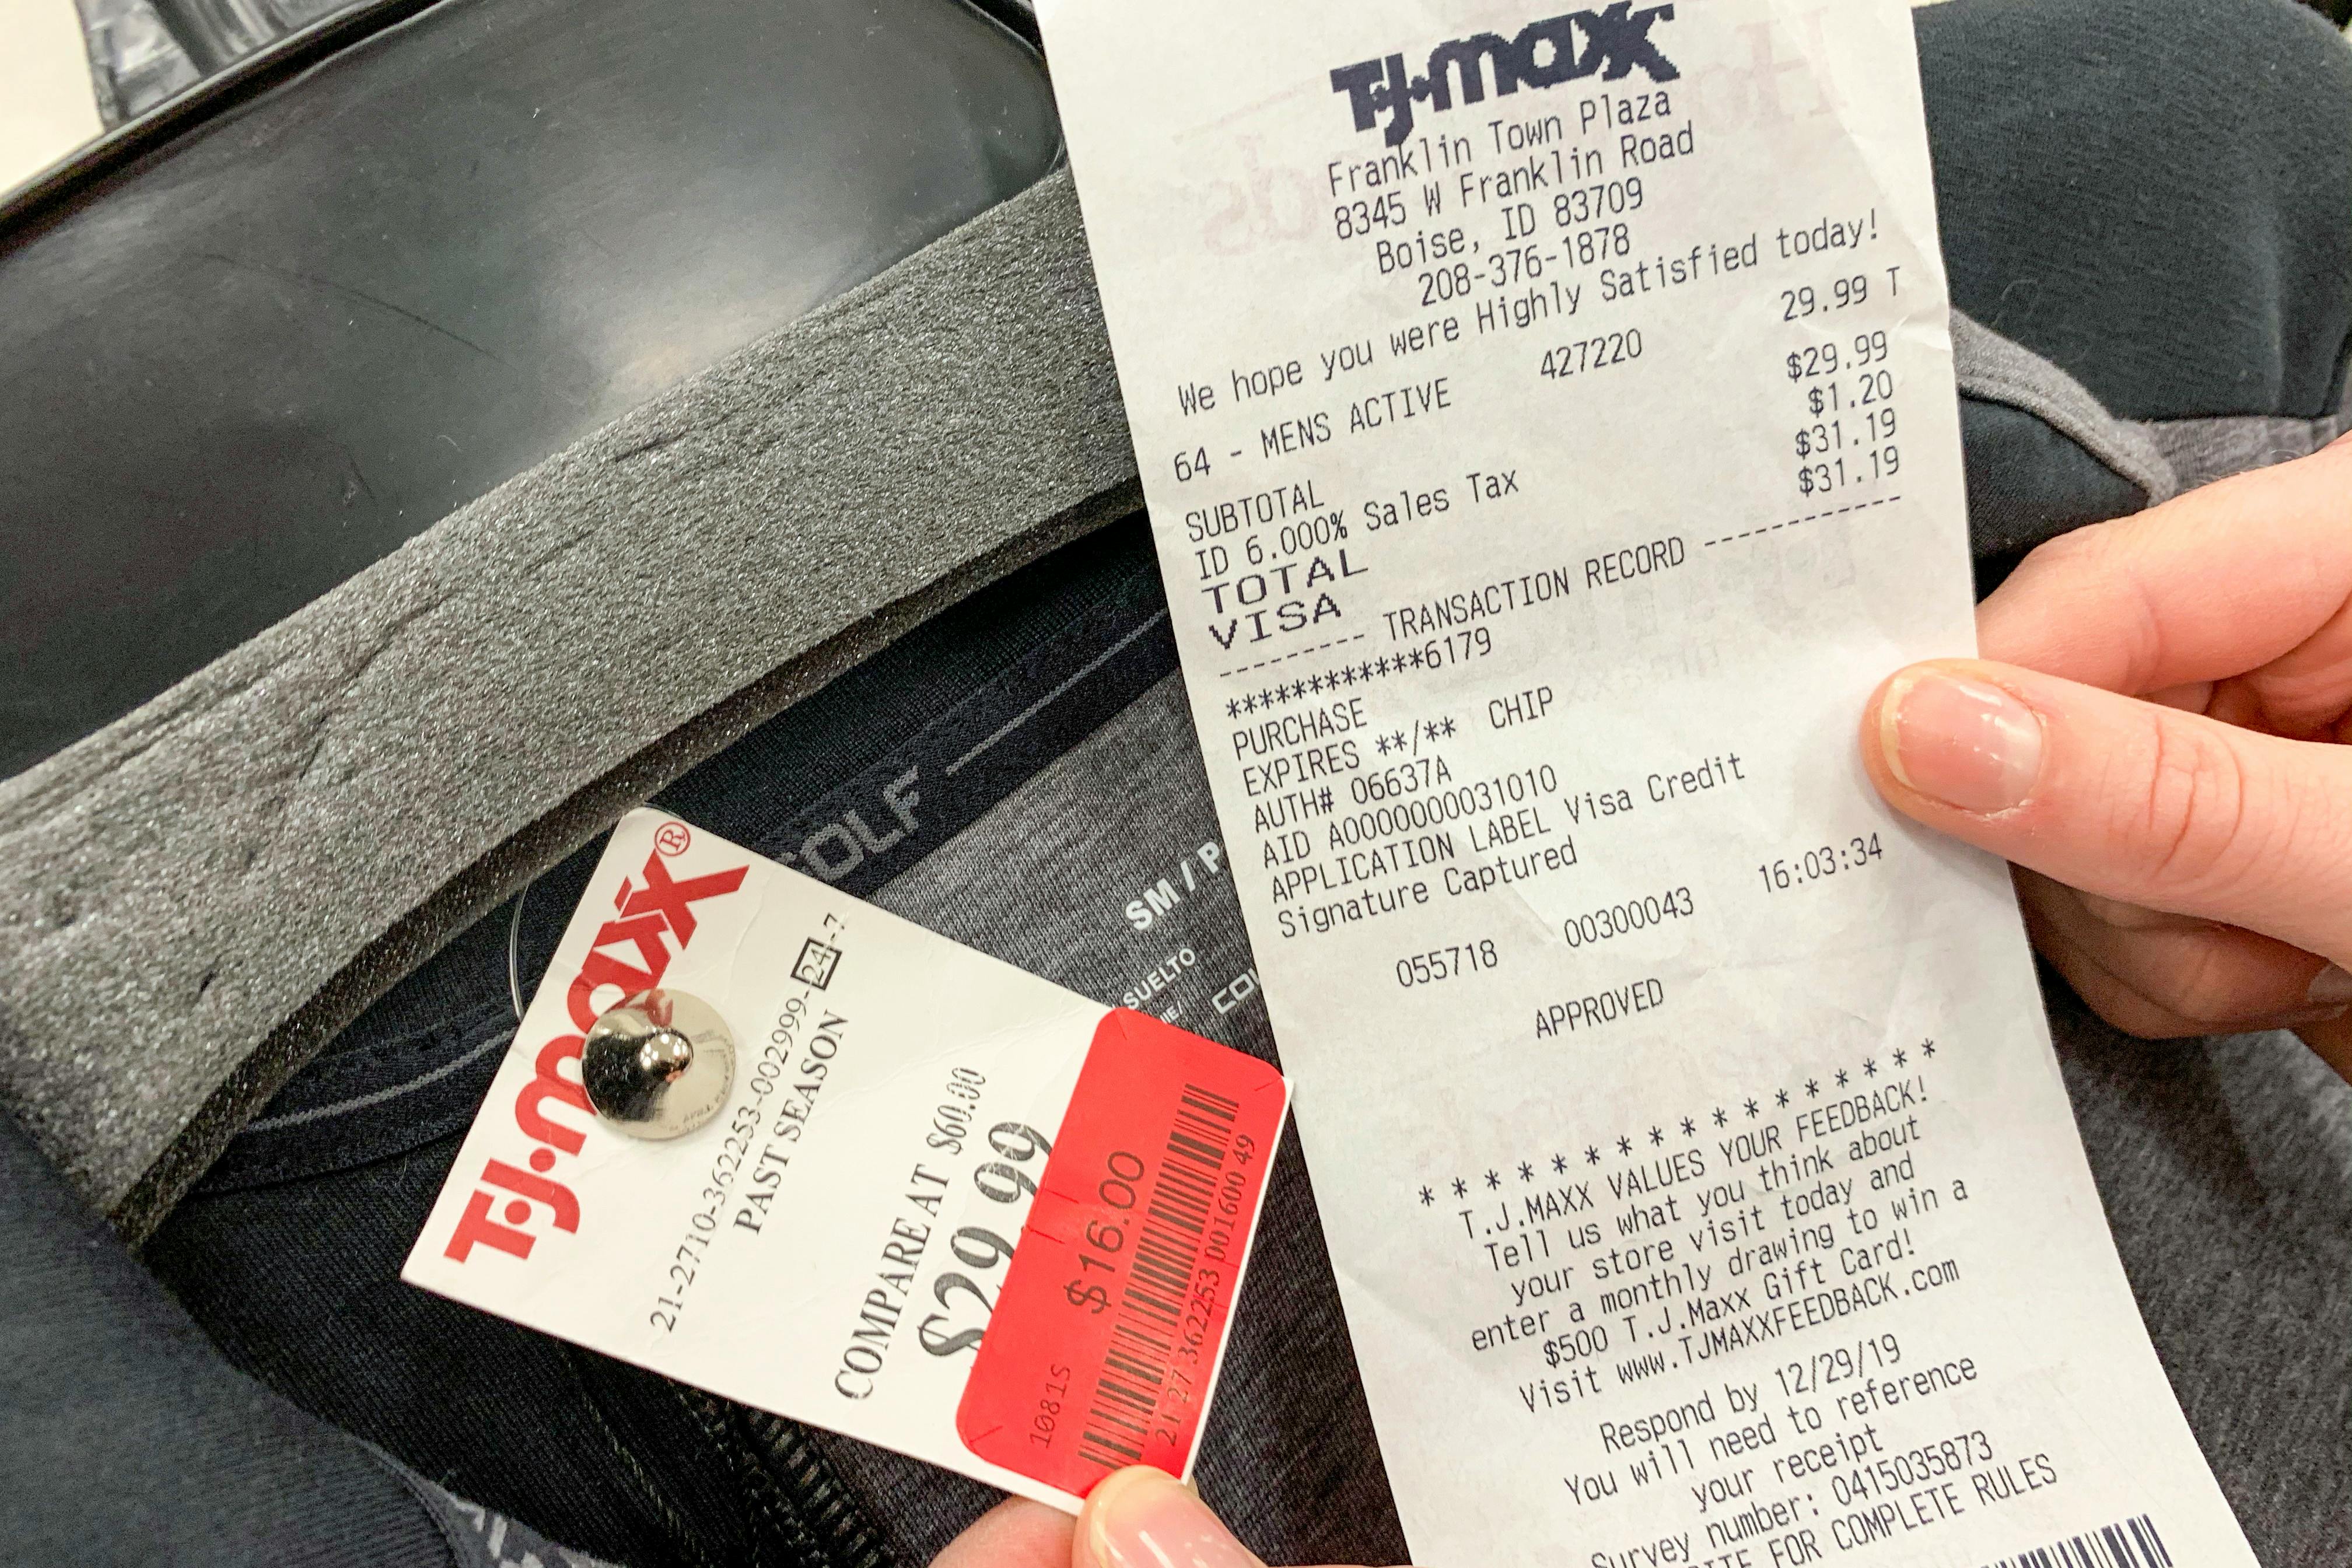 fetch rewards fake receipts 2020